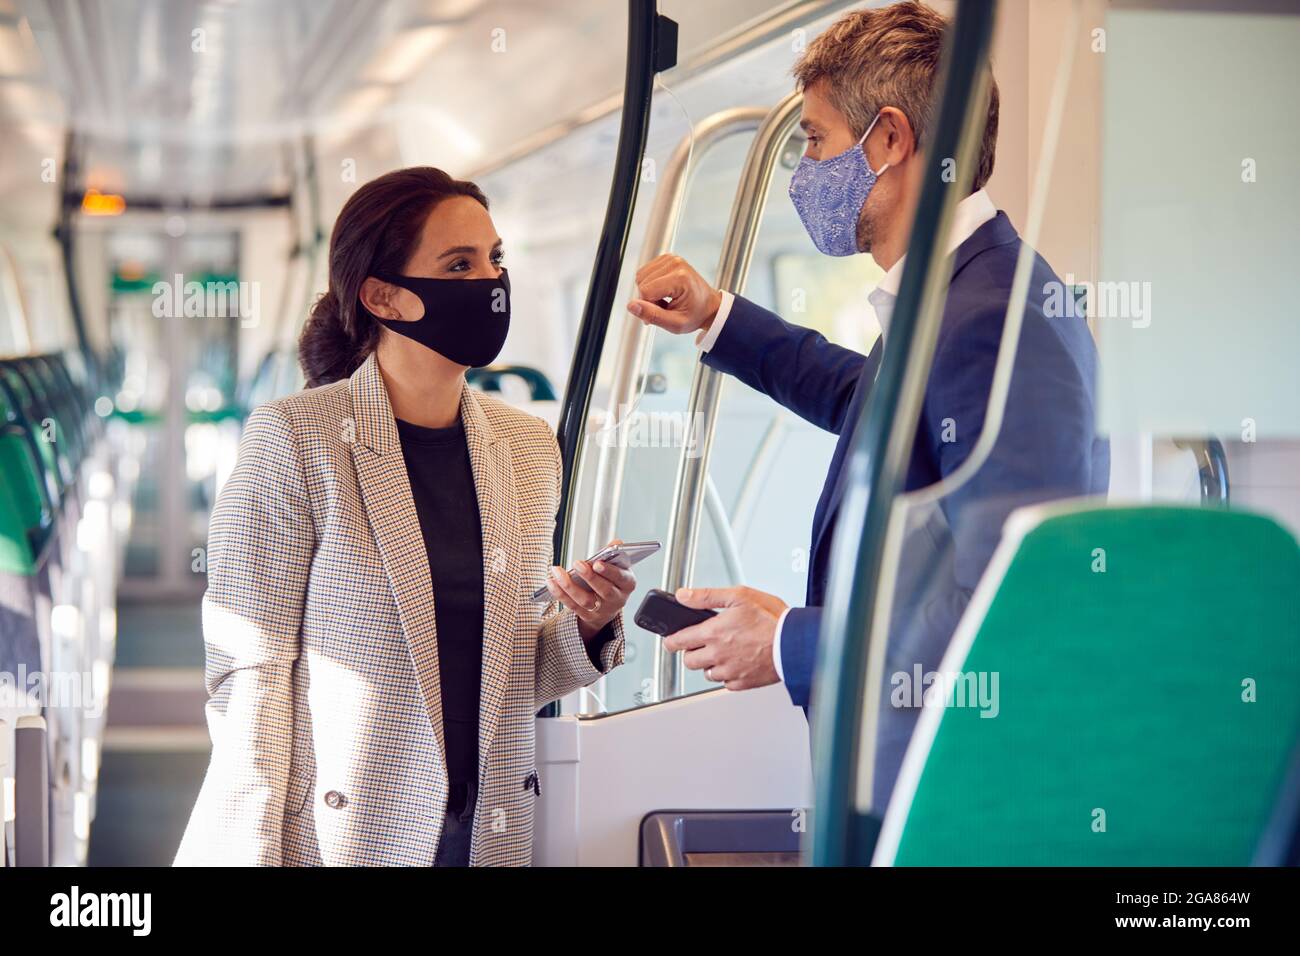 Les voyageurs d'affaires se trouvent dans un train avec des téléphones mobiles portant un masque facial PPE pendant une pandémie Banque D'Images